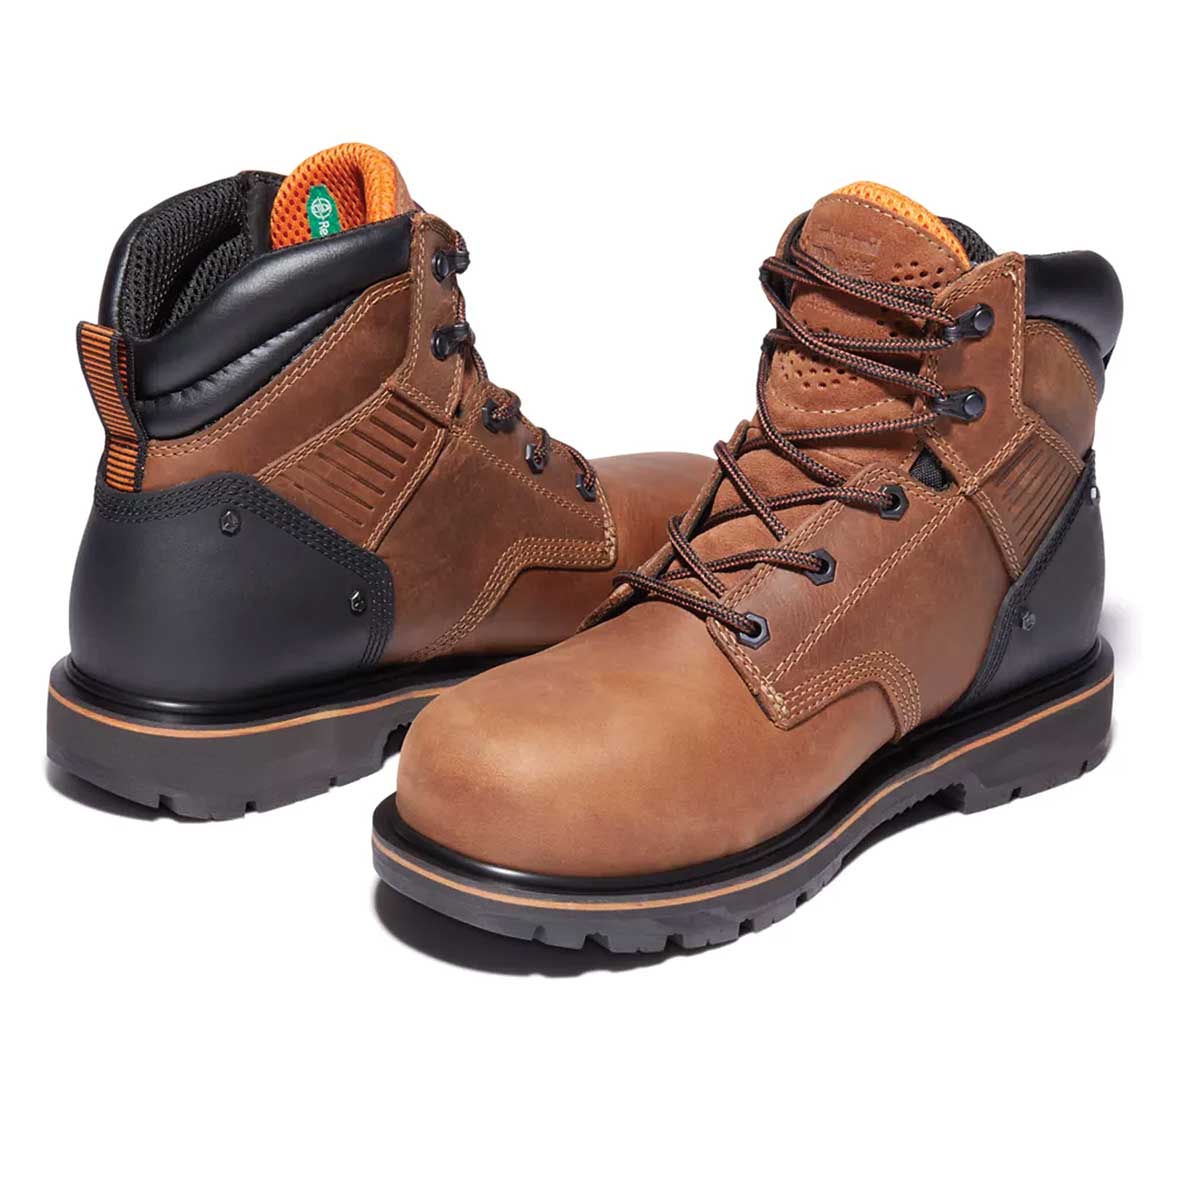 Timberland PRO Ballast 6" Steel Toe Boots